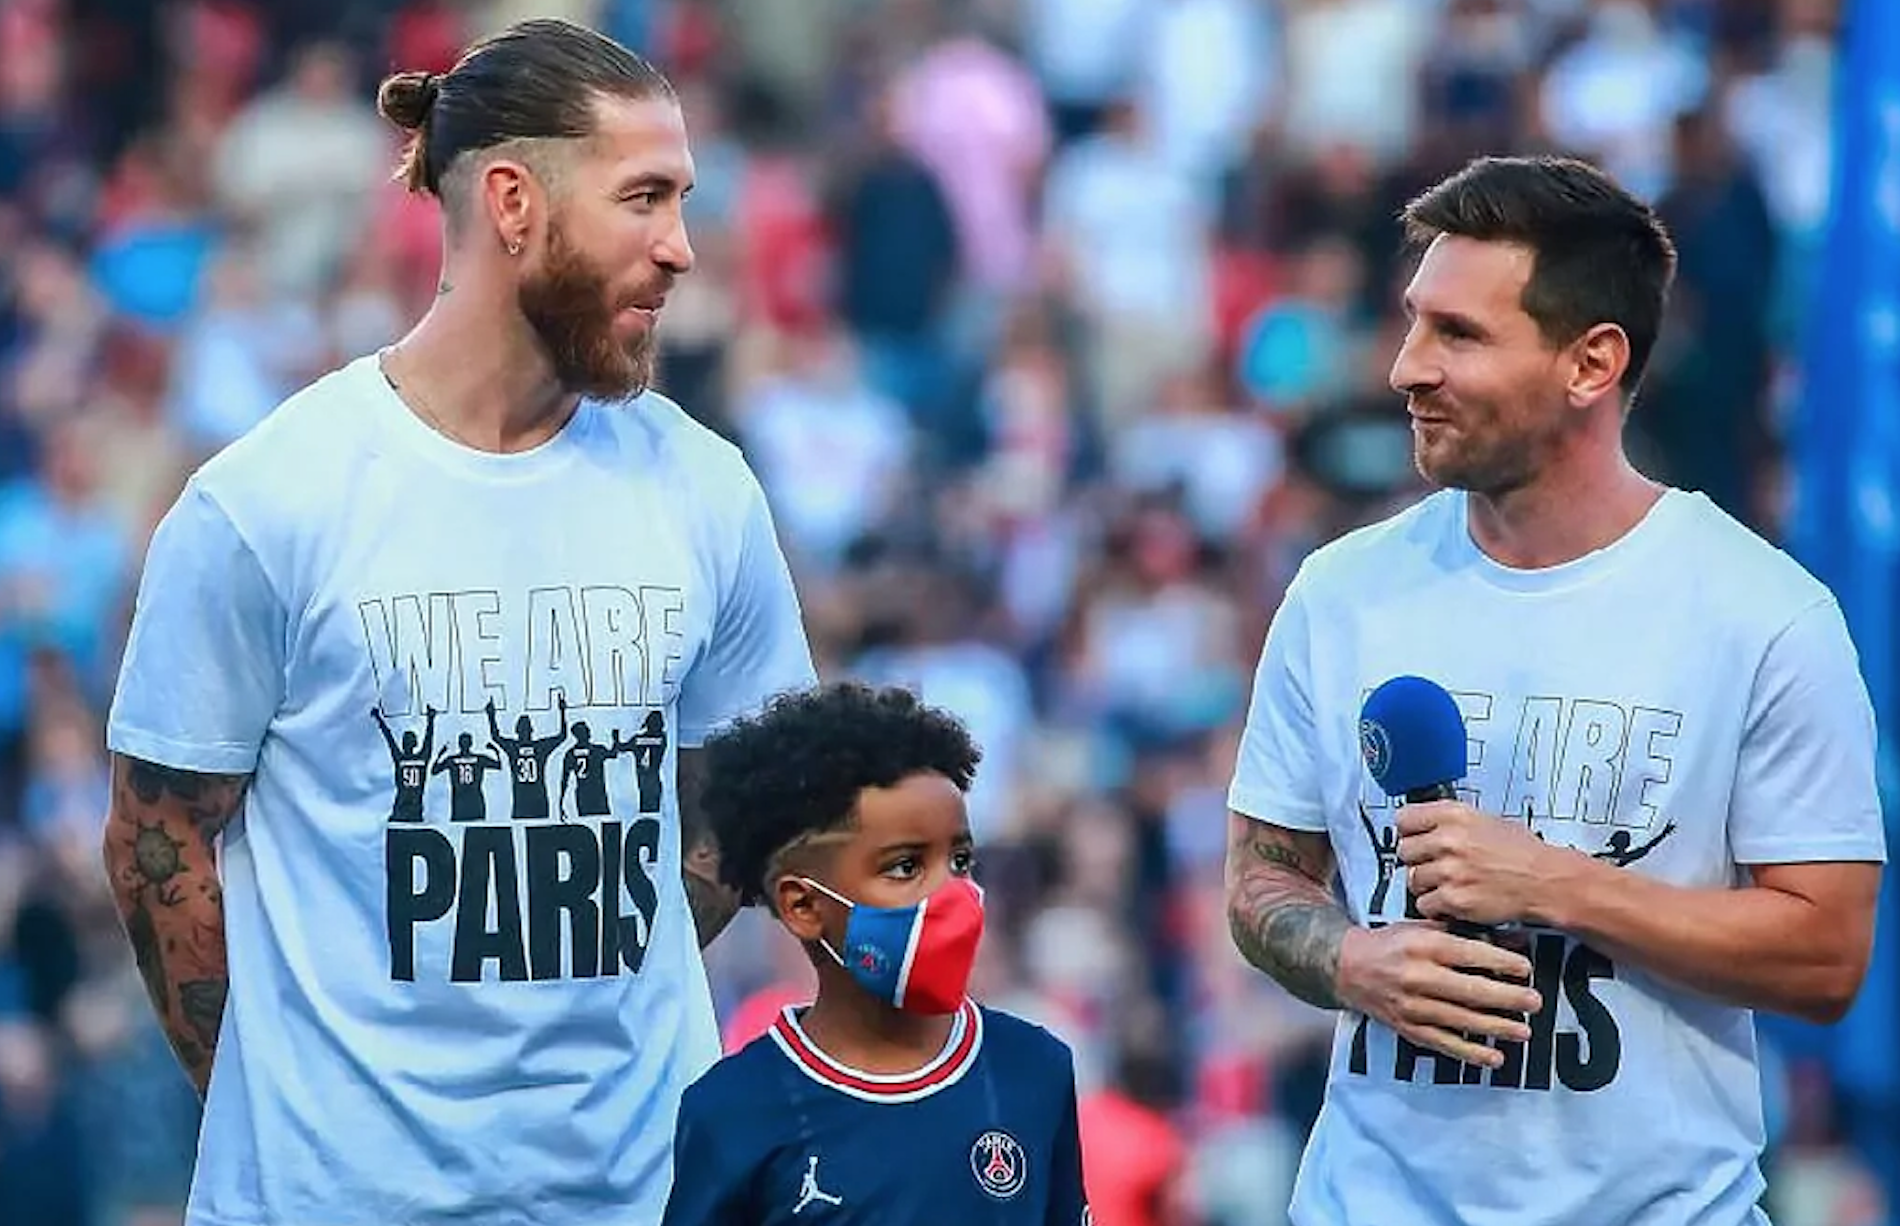 Sự xuất hiện của Sergio Ramos trong PSG đã tạo nên mối quan hệ đặc biệt giữa anh và Messi. Họ đã từng là đối thủ trên sân, nhưng giờ đây họ cùng nhau góp mặt trong một đội bóng tuyệt vời. Hãy cùng xem những hình ảnh đầy cảm xúc của chúng ta ở đội PSG.